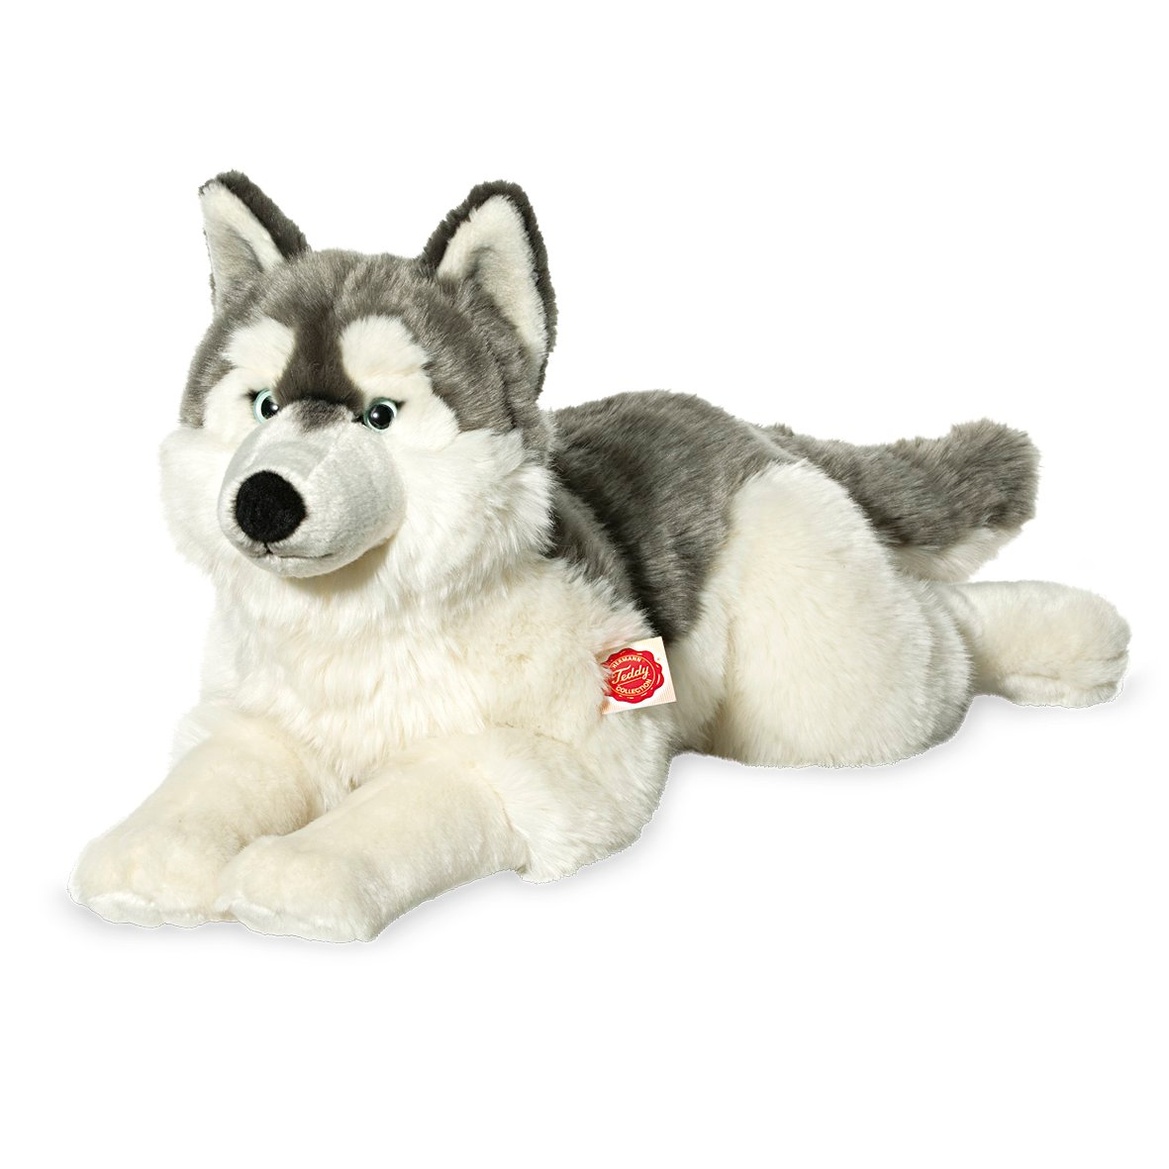 tachi Stofftier Hund 25 cm, Plüschtier Husky grau weiß, Liegender